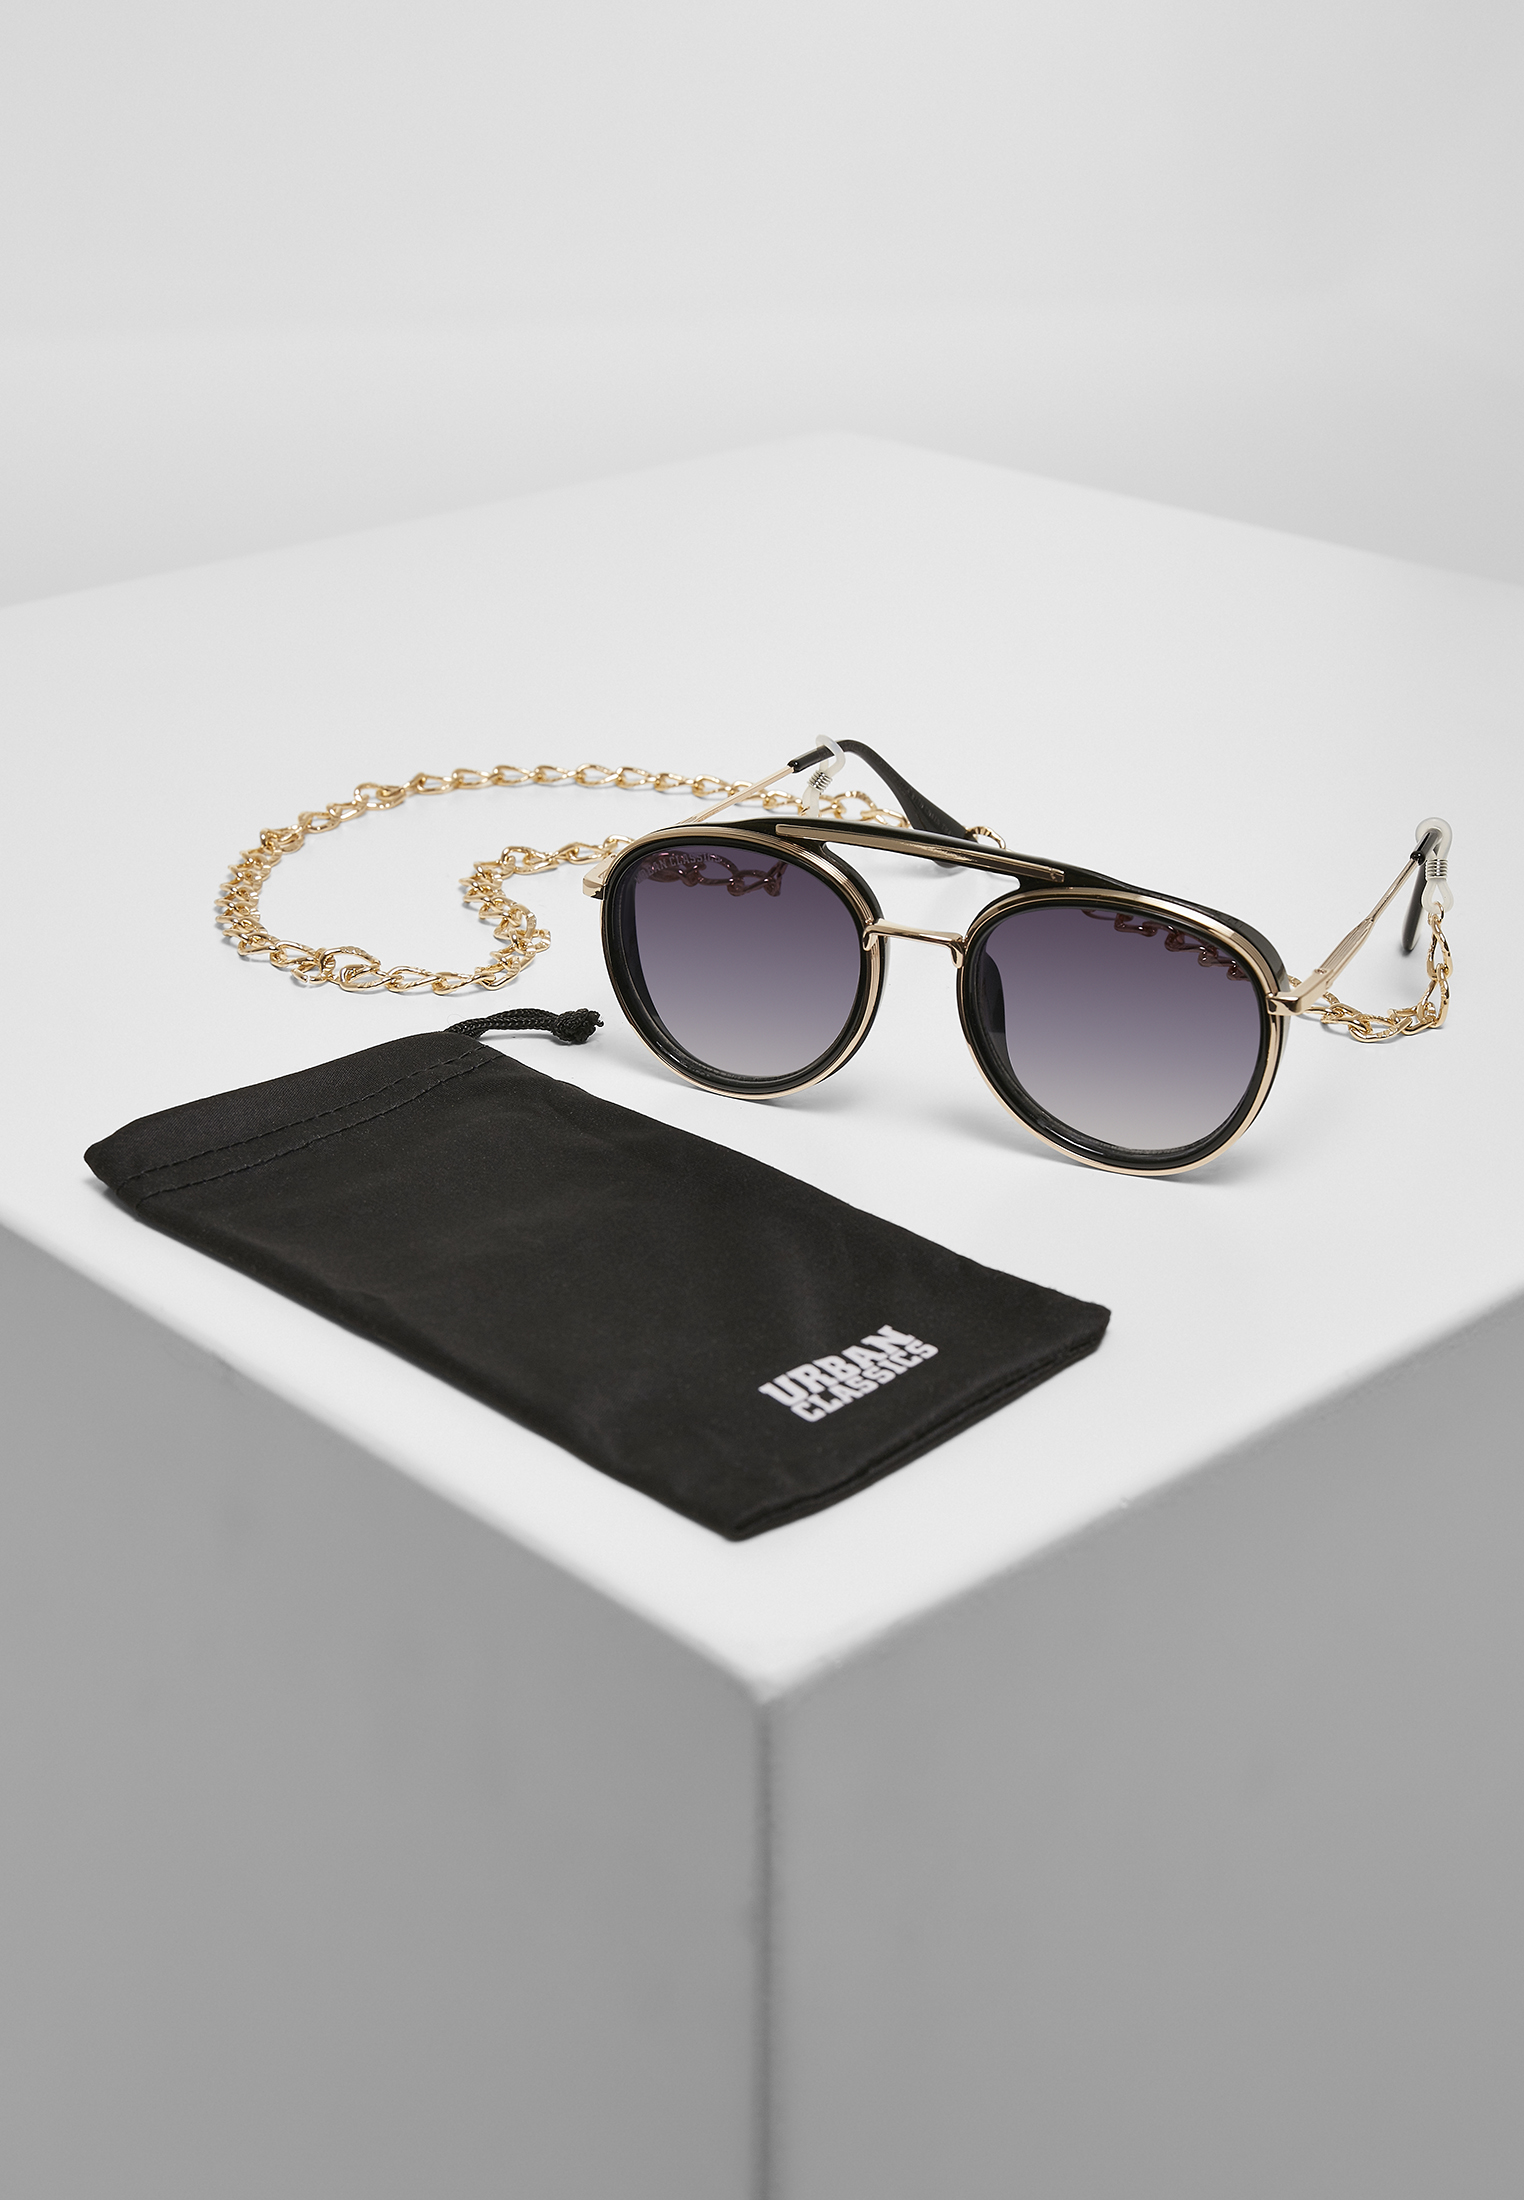 Ibiza sunglasses with chain black/gold